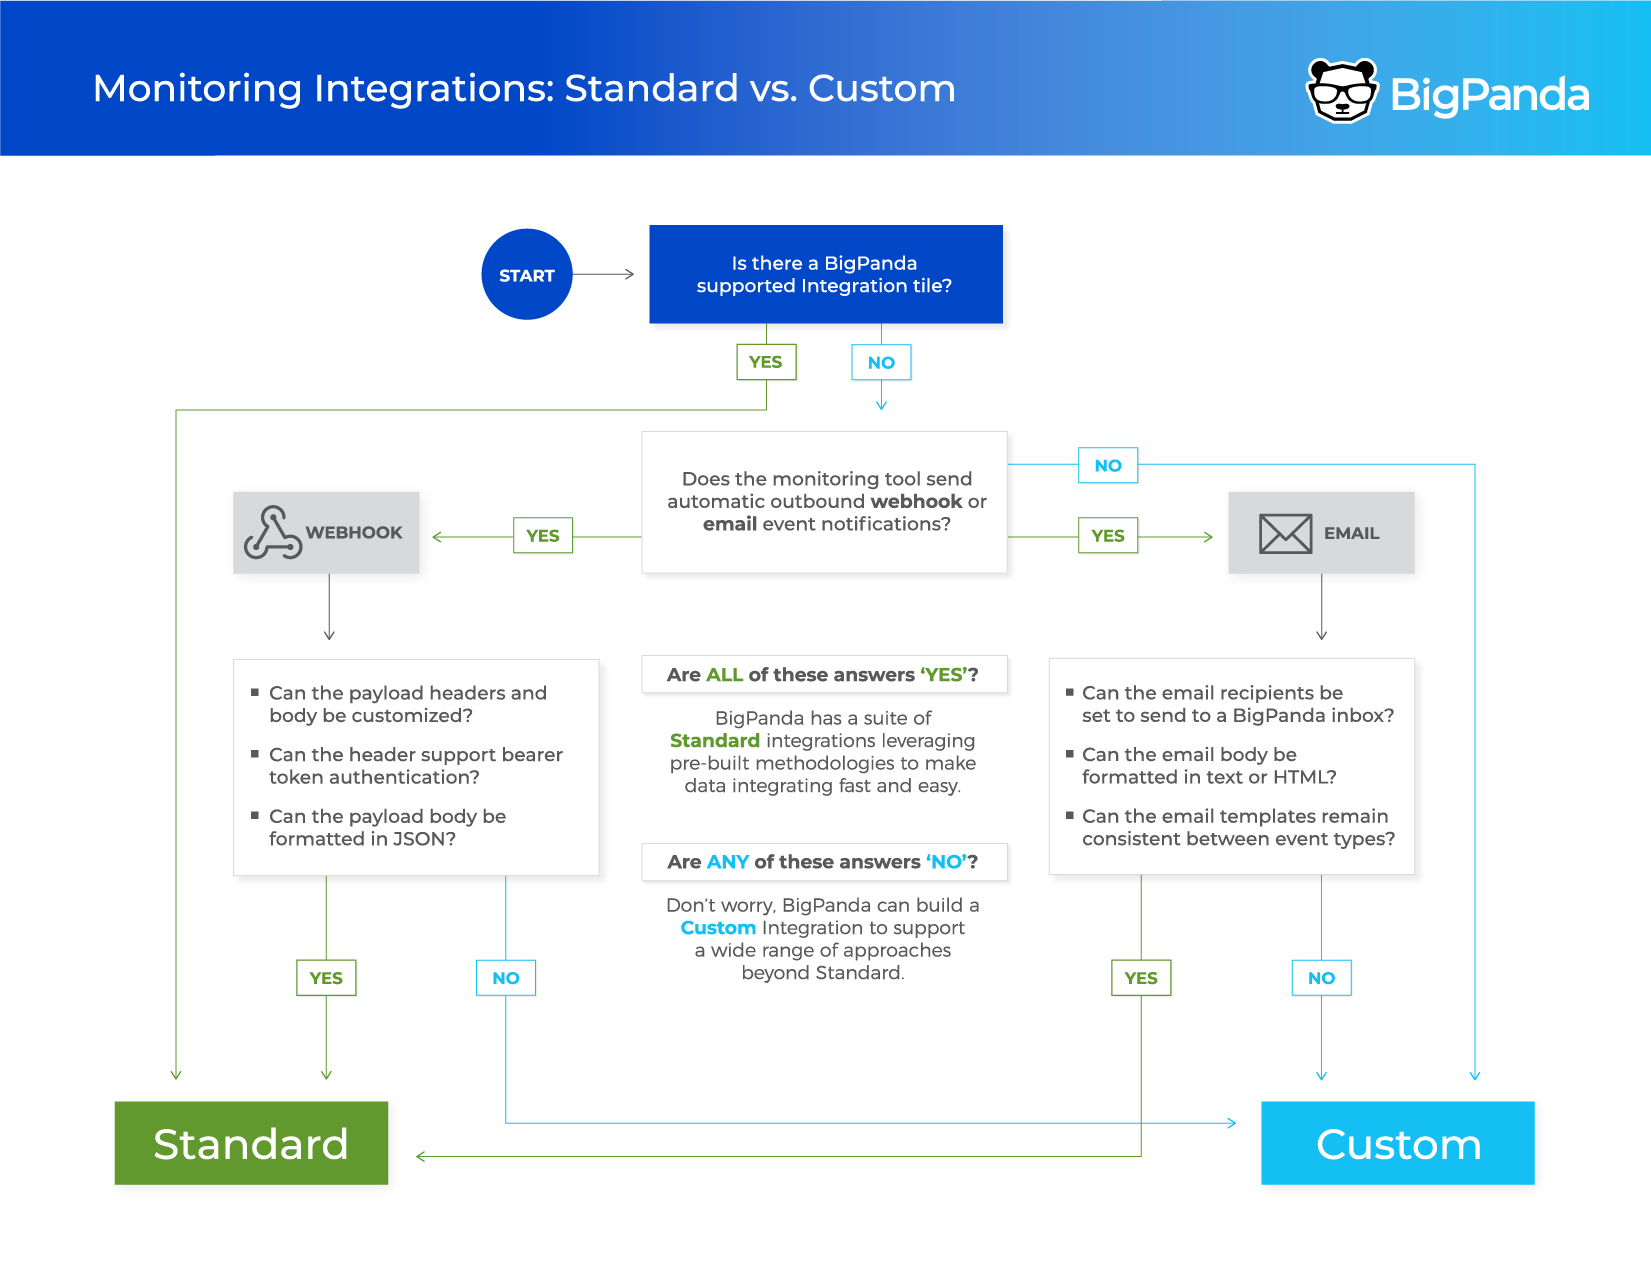 Standard vs. Custom Integrations